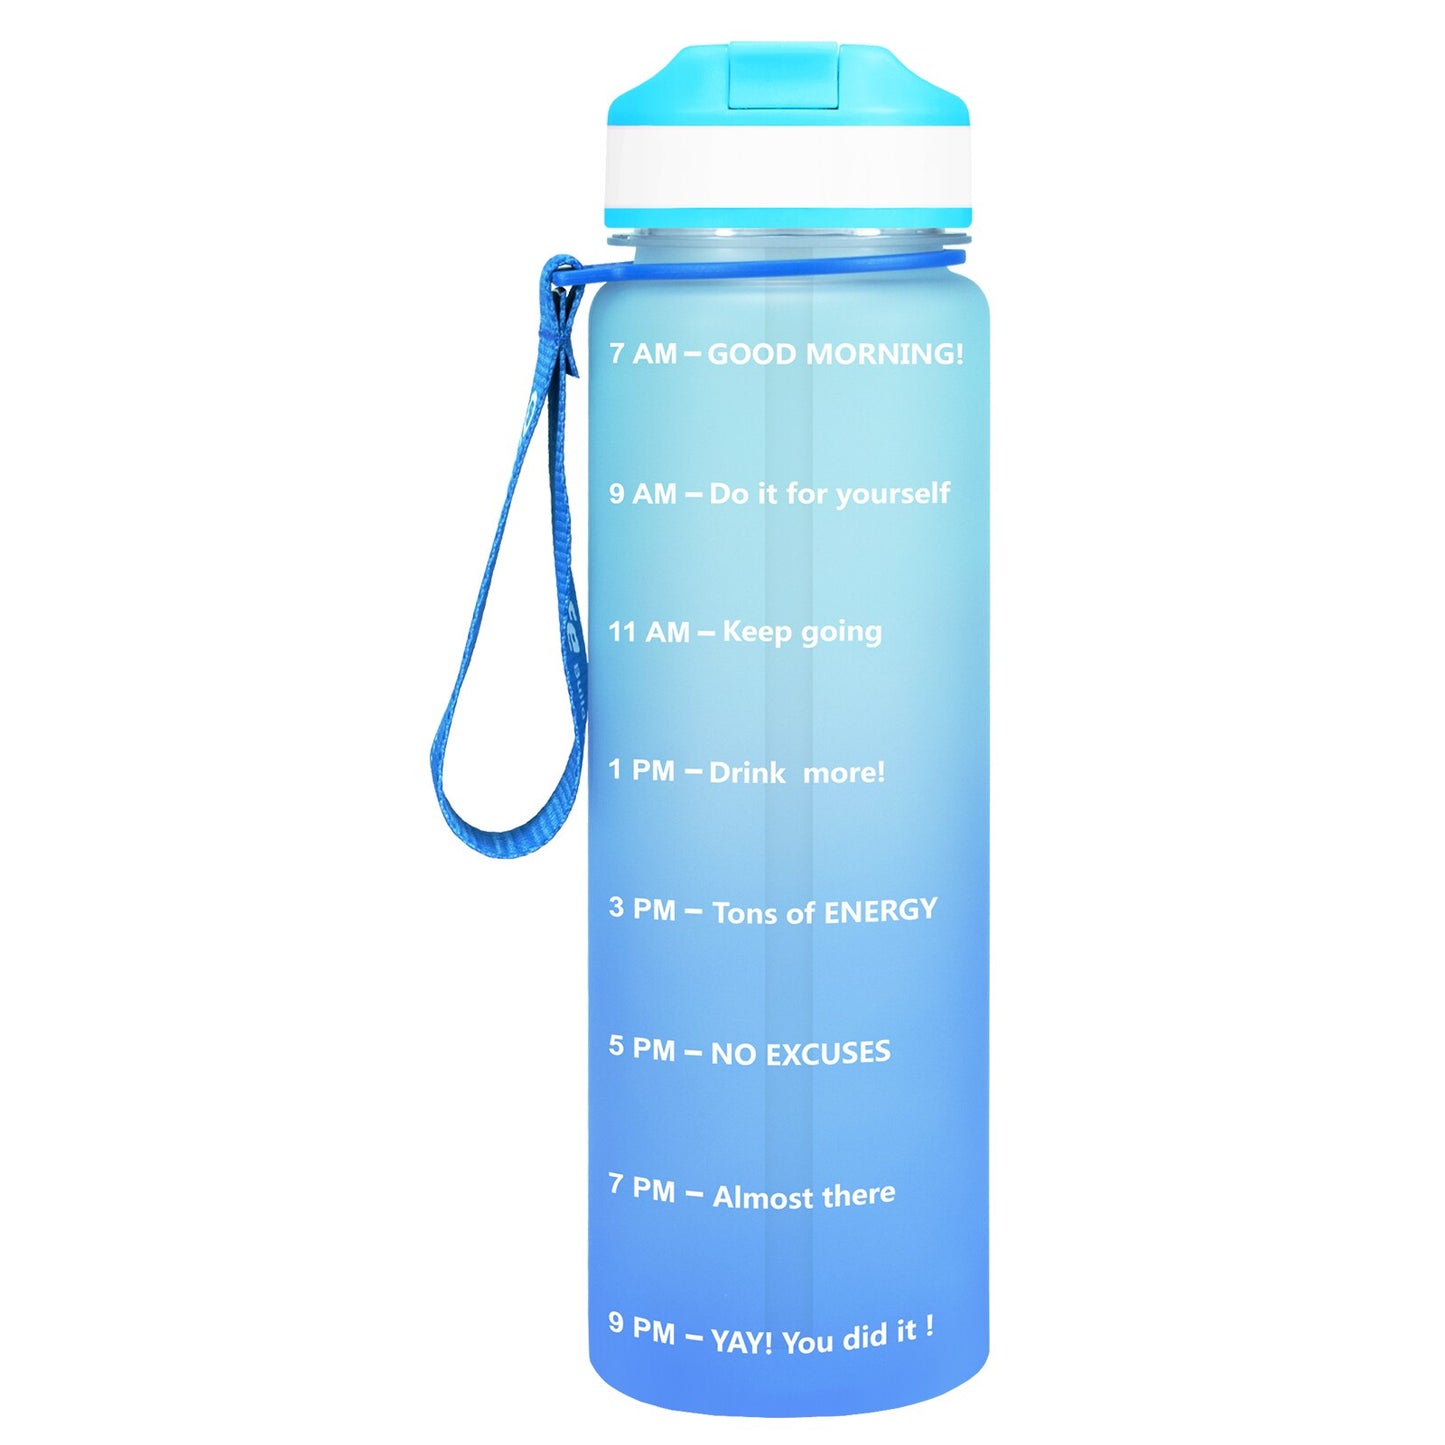 Eine blaue Sporttrinkflasche mit einer Zeitmarkierungen sowie motivierenden Spruechen für verschiedene Tageszeiten. Die Flasche hat eine blaue Trageschlaufe und einen Deckel mit einem aufklappbaren Trinkverschluss.